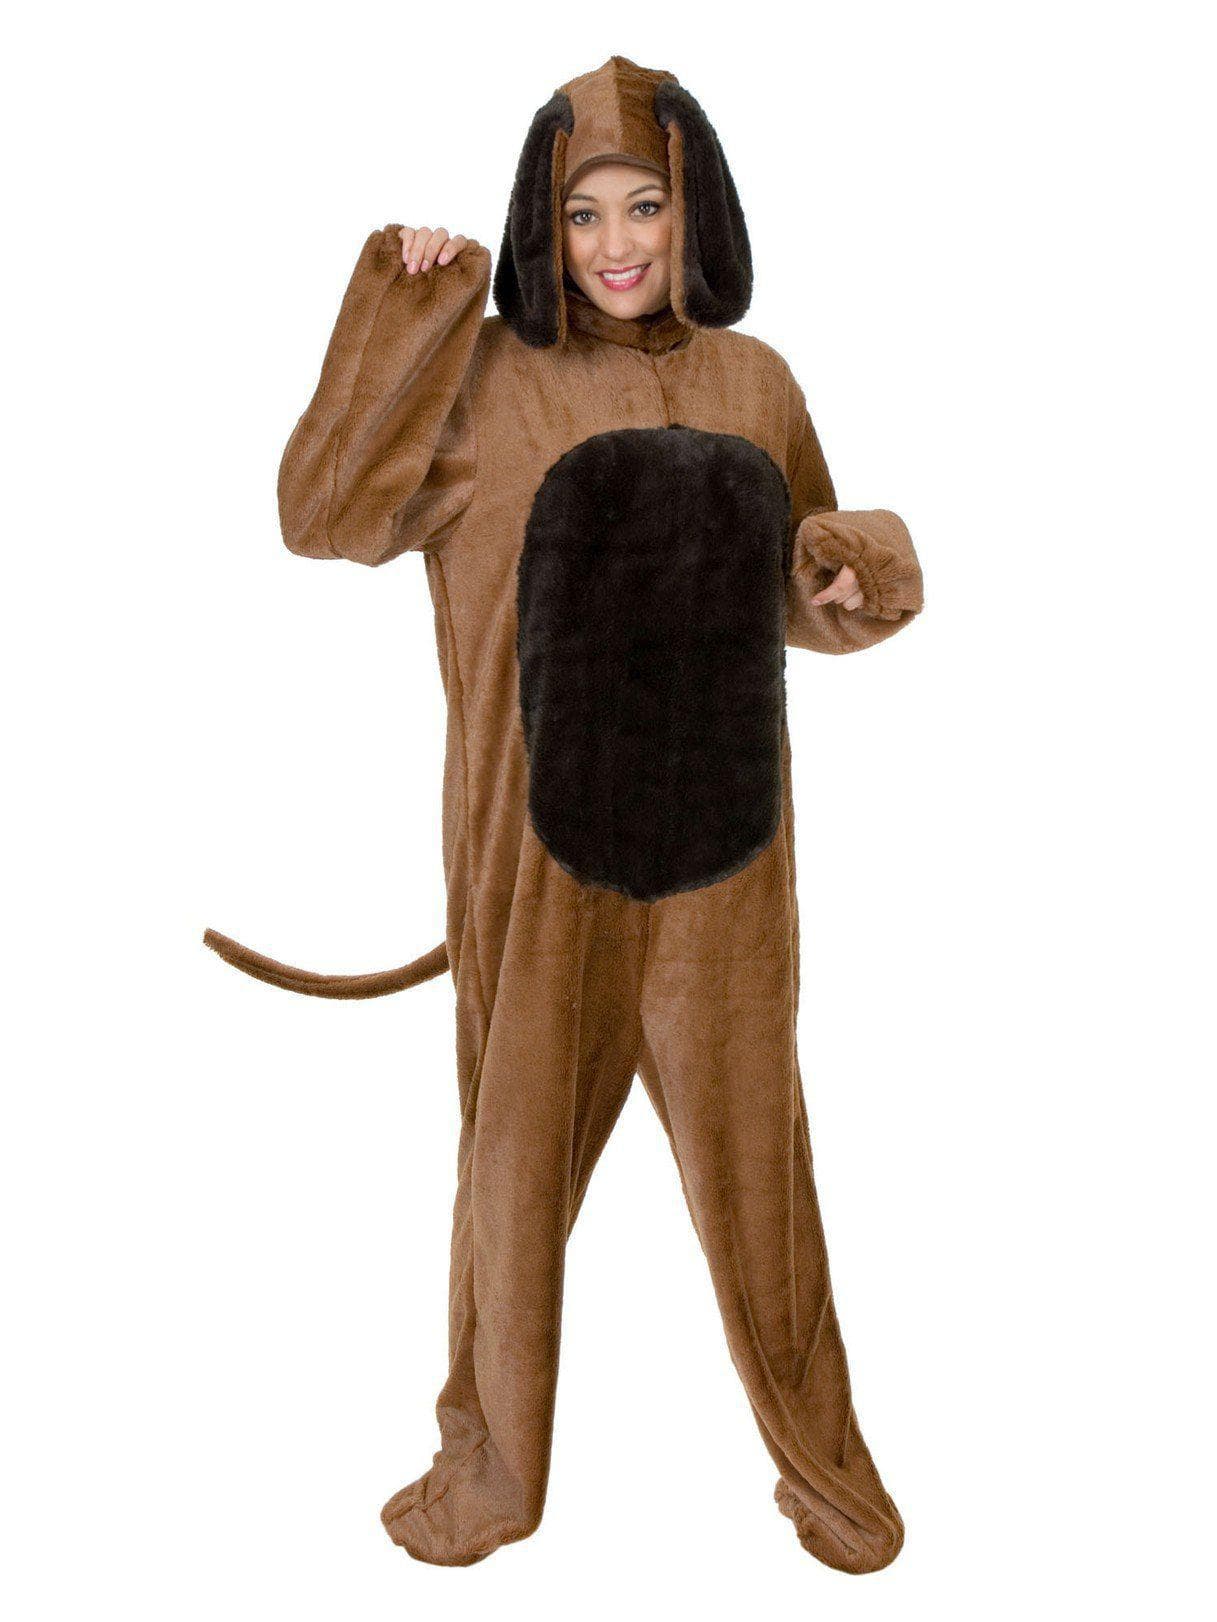 Adult Big Dog Costume - costumes.com